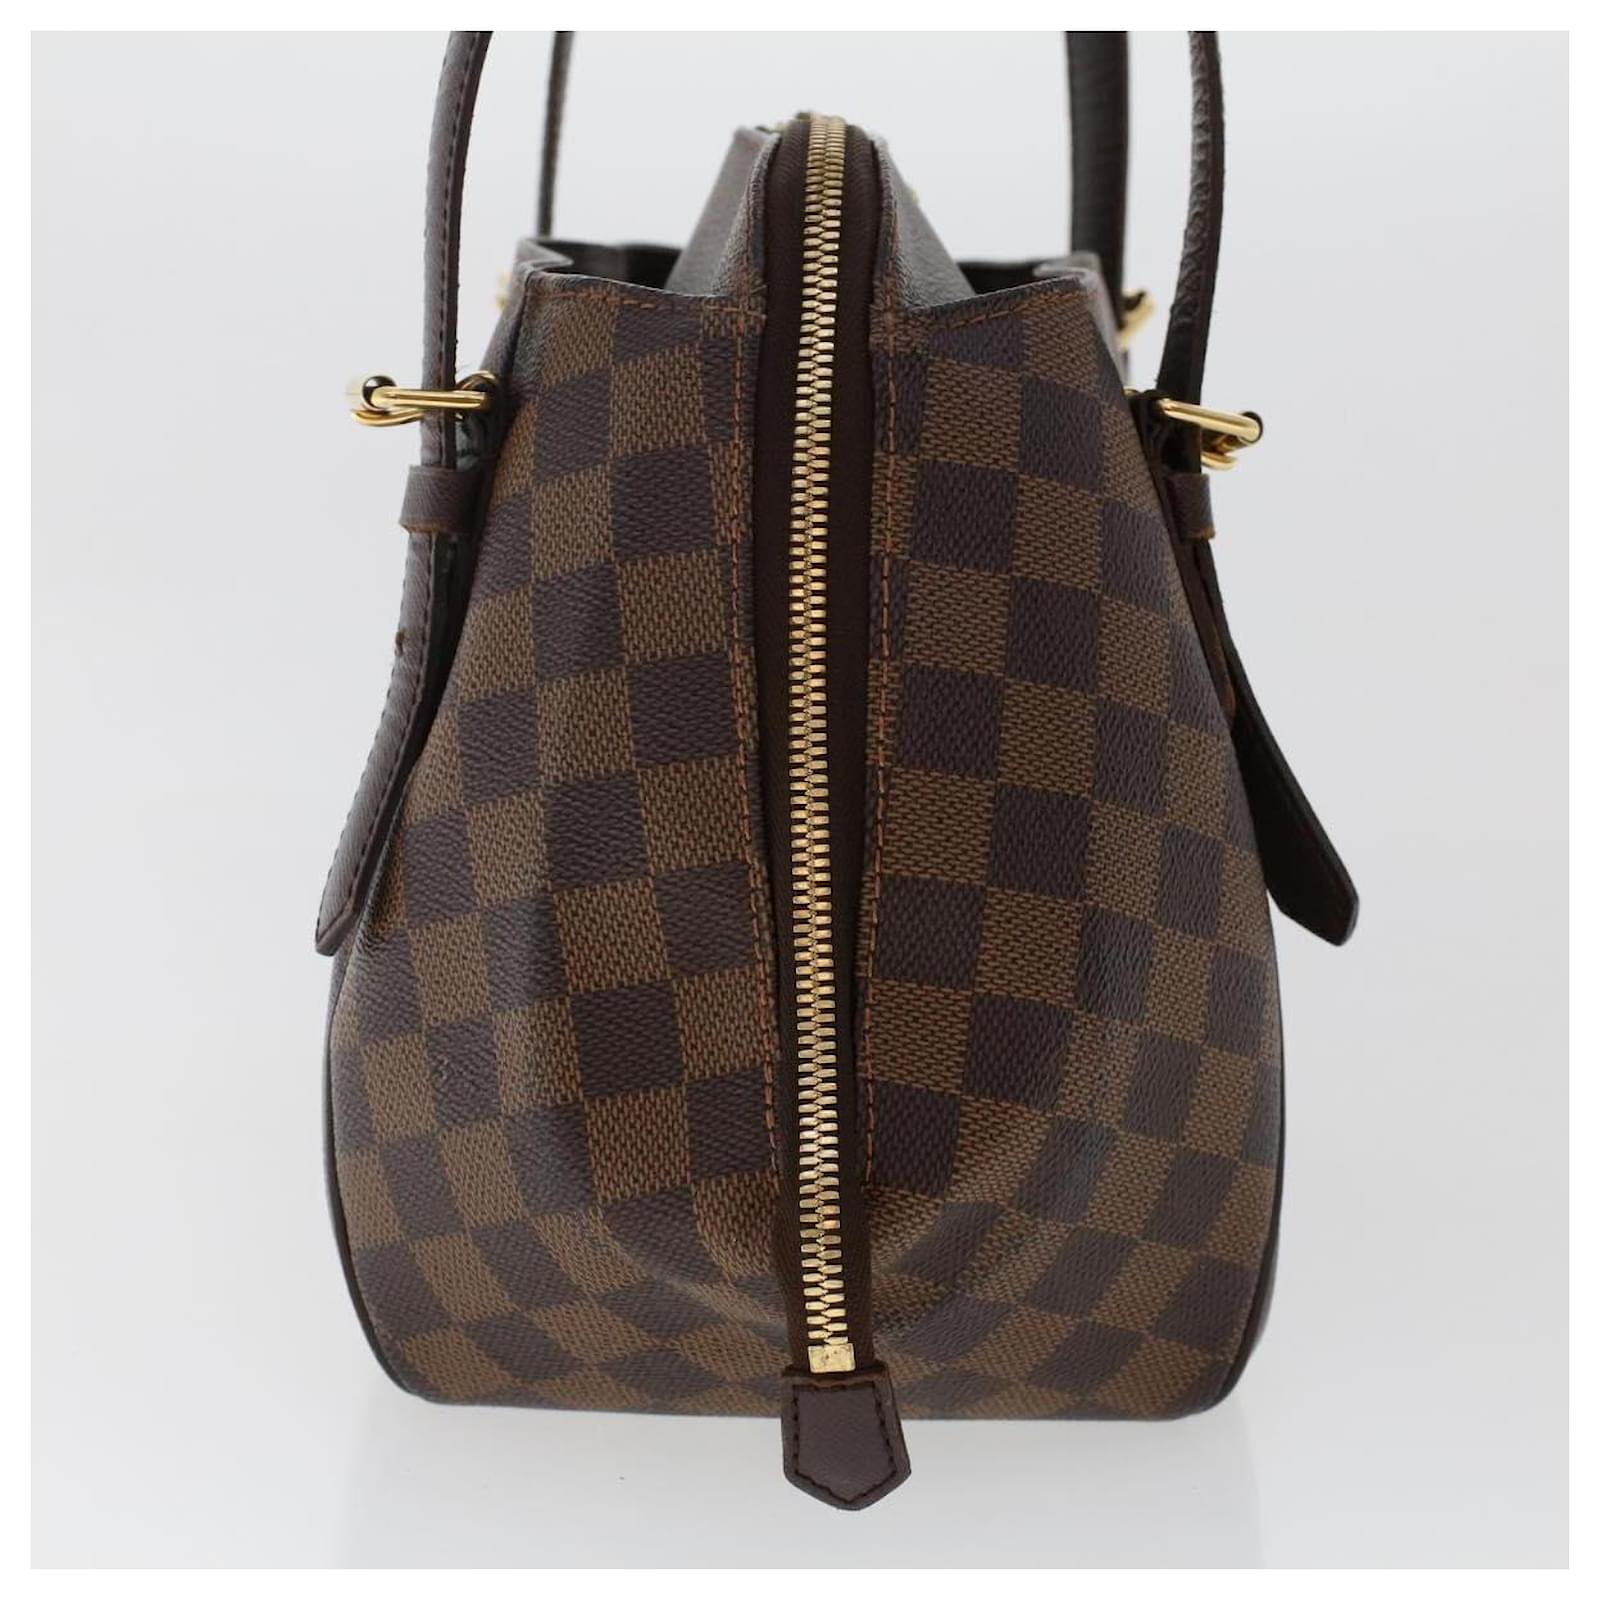 Louis Vuitton, Bags, Preowned Authentic Luis Vuitton Verona Pm Damier Ebene  Canvas Damie Ebene Bag